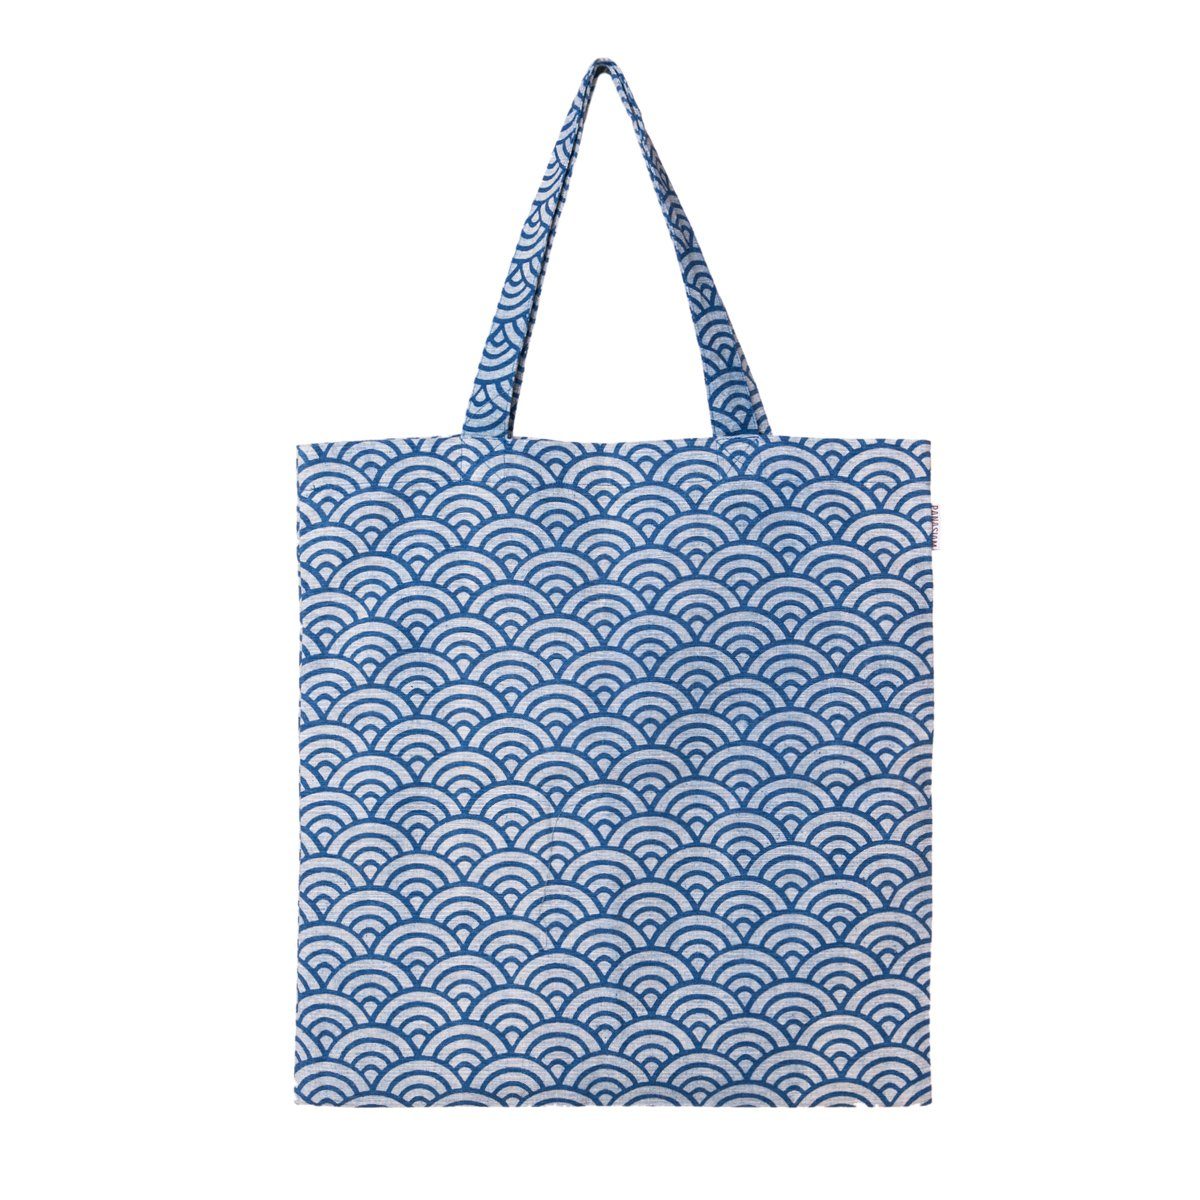 PANASIAM Beuteltasche Geometrix Baumwollbeutel auch als Einkaufstasche oder Schuhbeutel, aus 100% Baumwolle Jutebeutel mit traditionellen japanischen Mustern Seigaiha